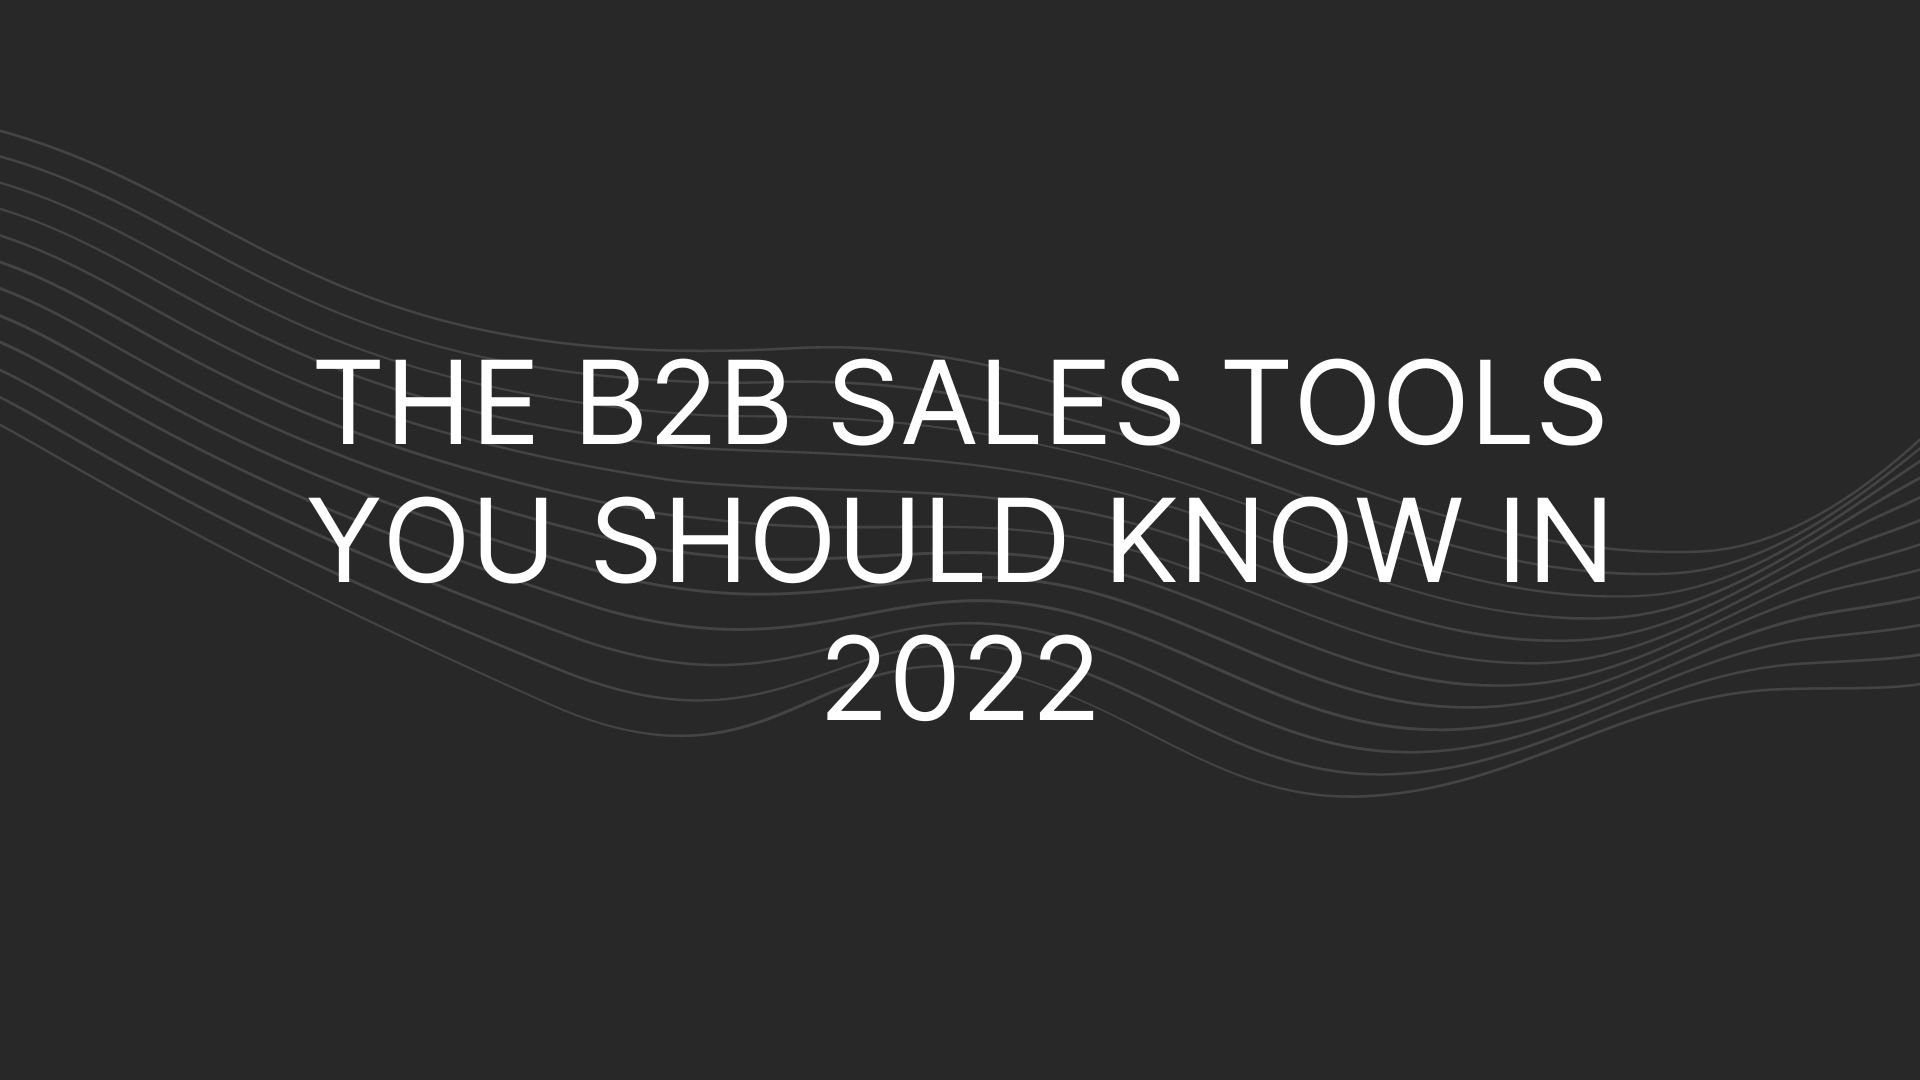 sales tools